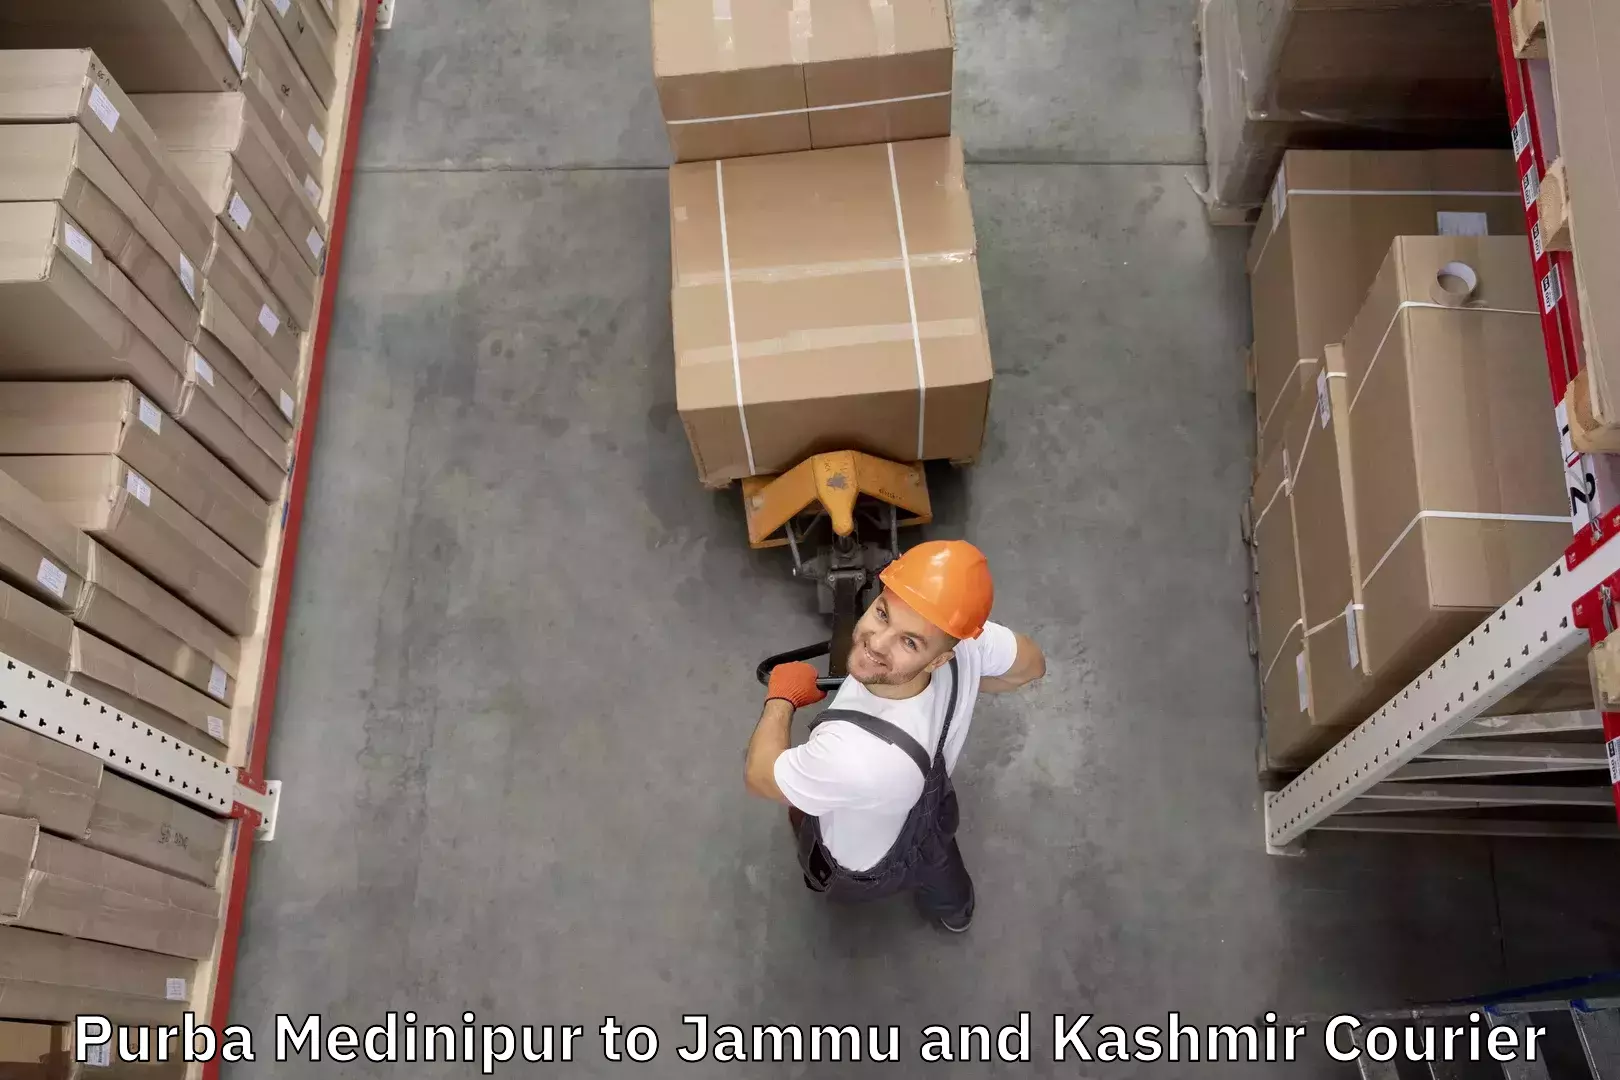 Automated luggage transport Purba Medinipur to Jammu